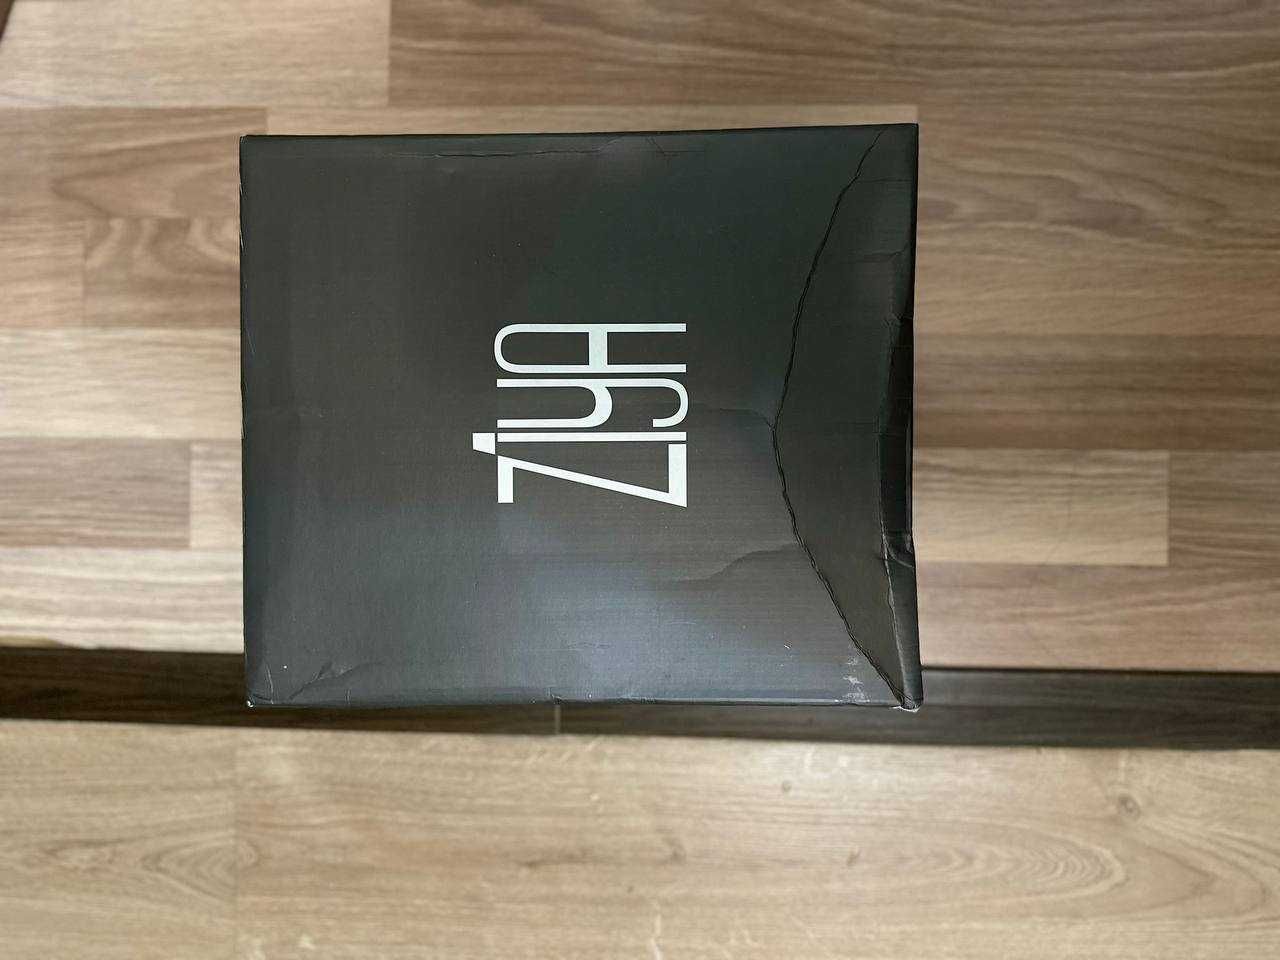 Продаётся пара обуви кожаных сапогов марки бренда ''Ziya''.